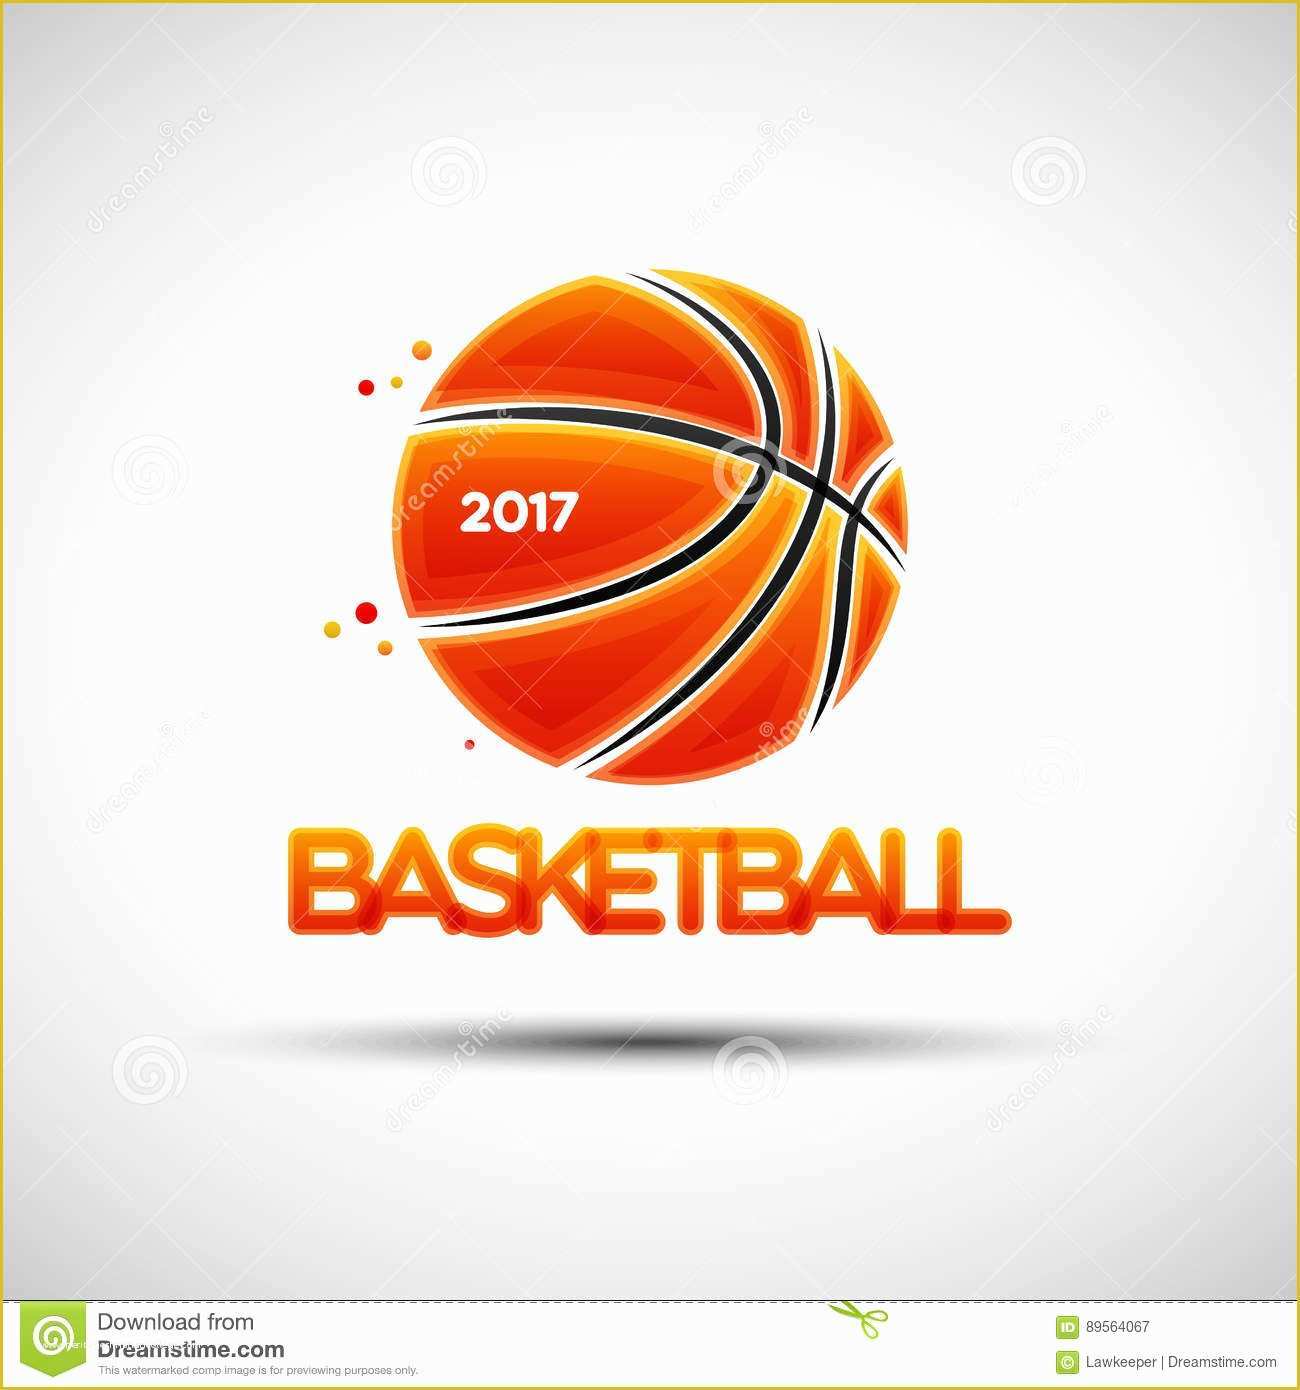 Basketball Logo Template Free Of Basketball Ball Logo Design Template Stock Vector